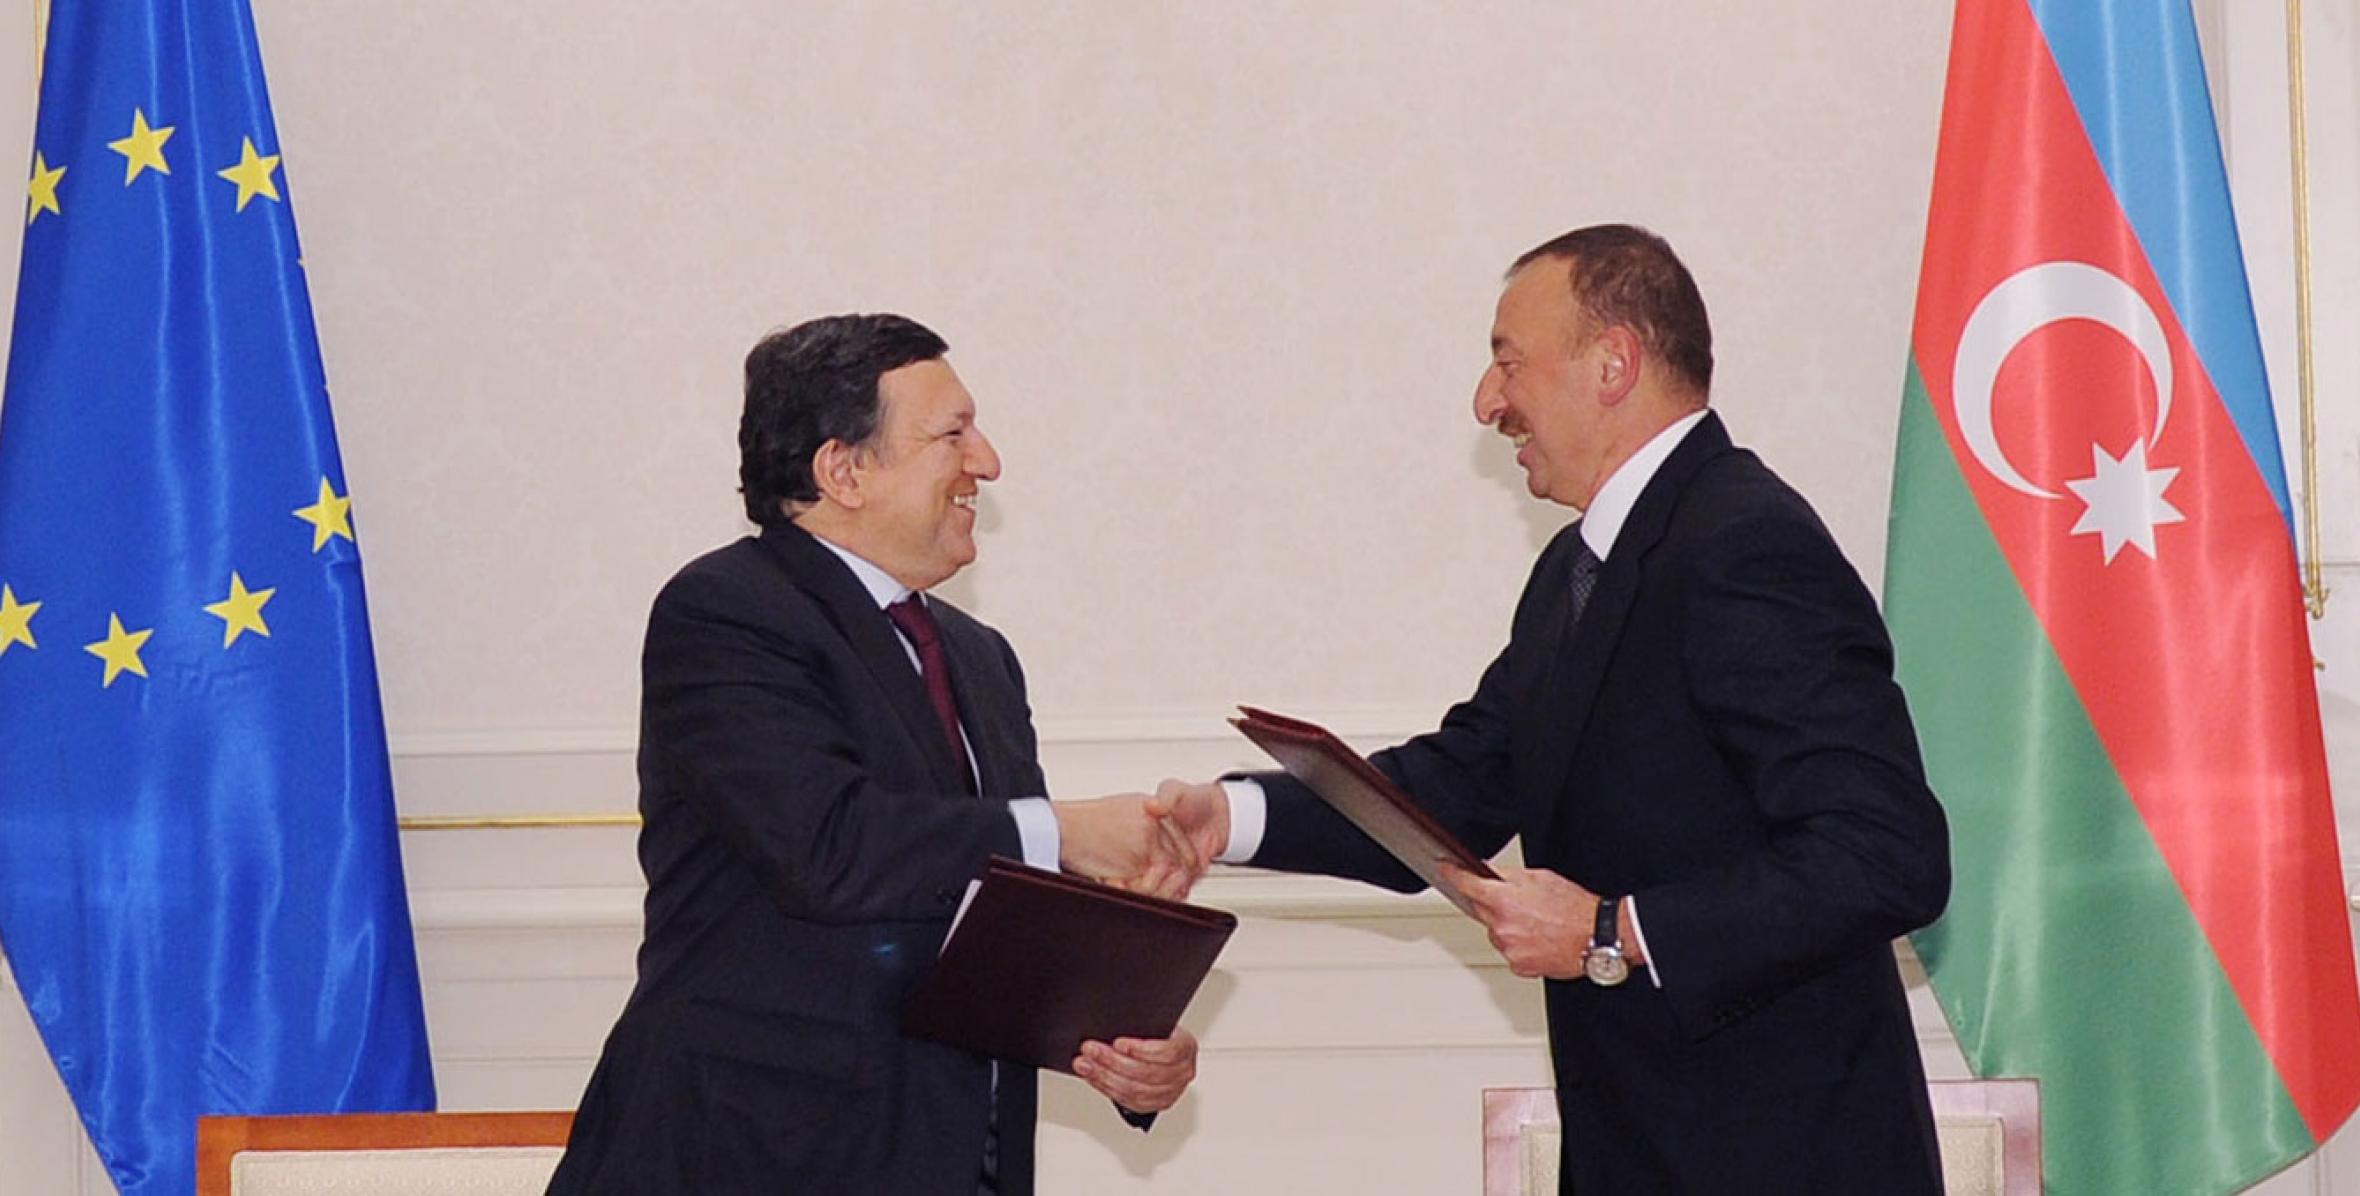 Состоялась церемония подписания документов между Азербайджанской Республикой и Европейским Союзом